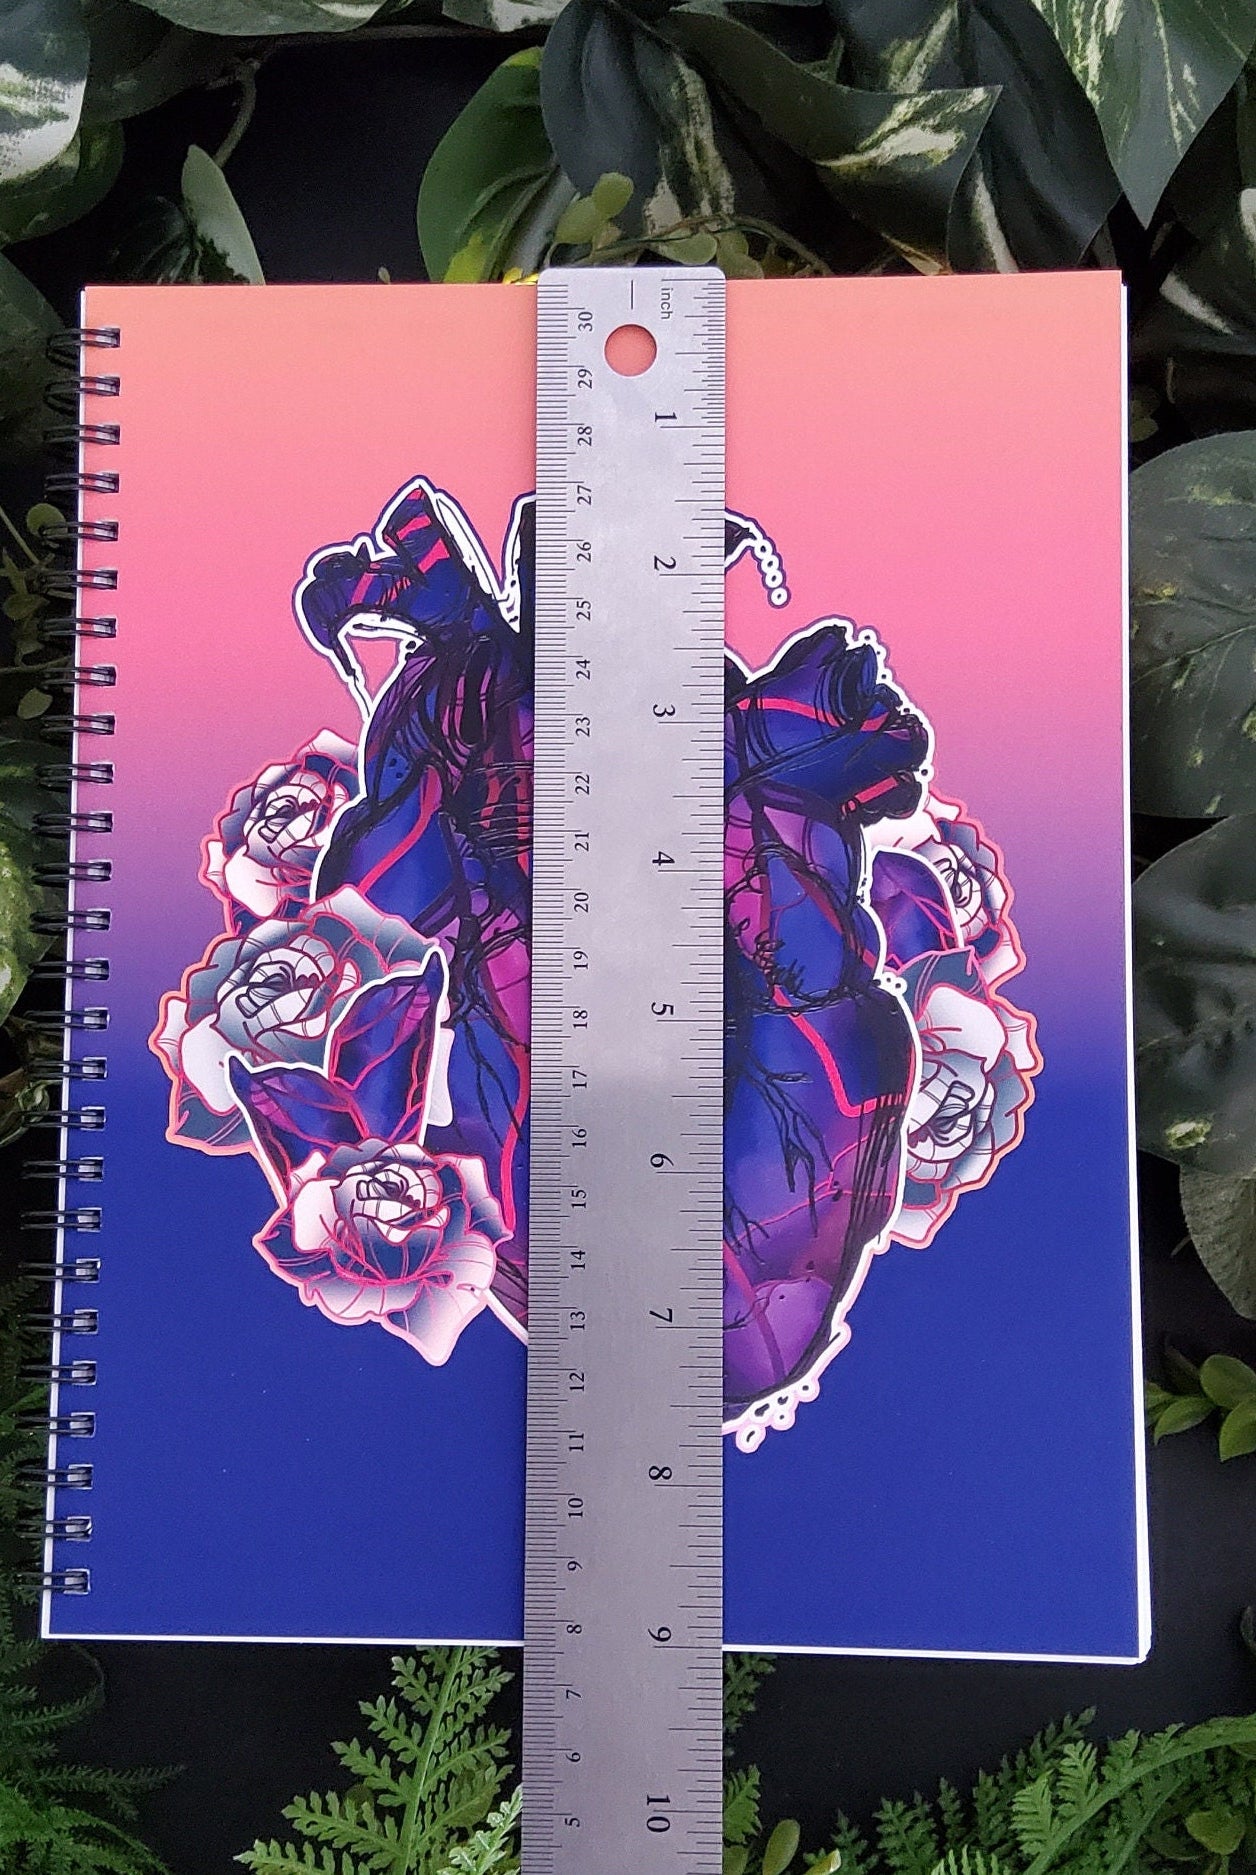 SPIRAL NOTEBOOK : Alexandrite Crystal Heart Spiral with College Ruled Pages , Alexandrite Crystal Notebook , Alexandrite Crystal Heart